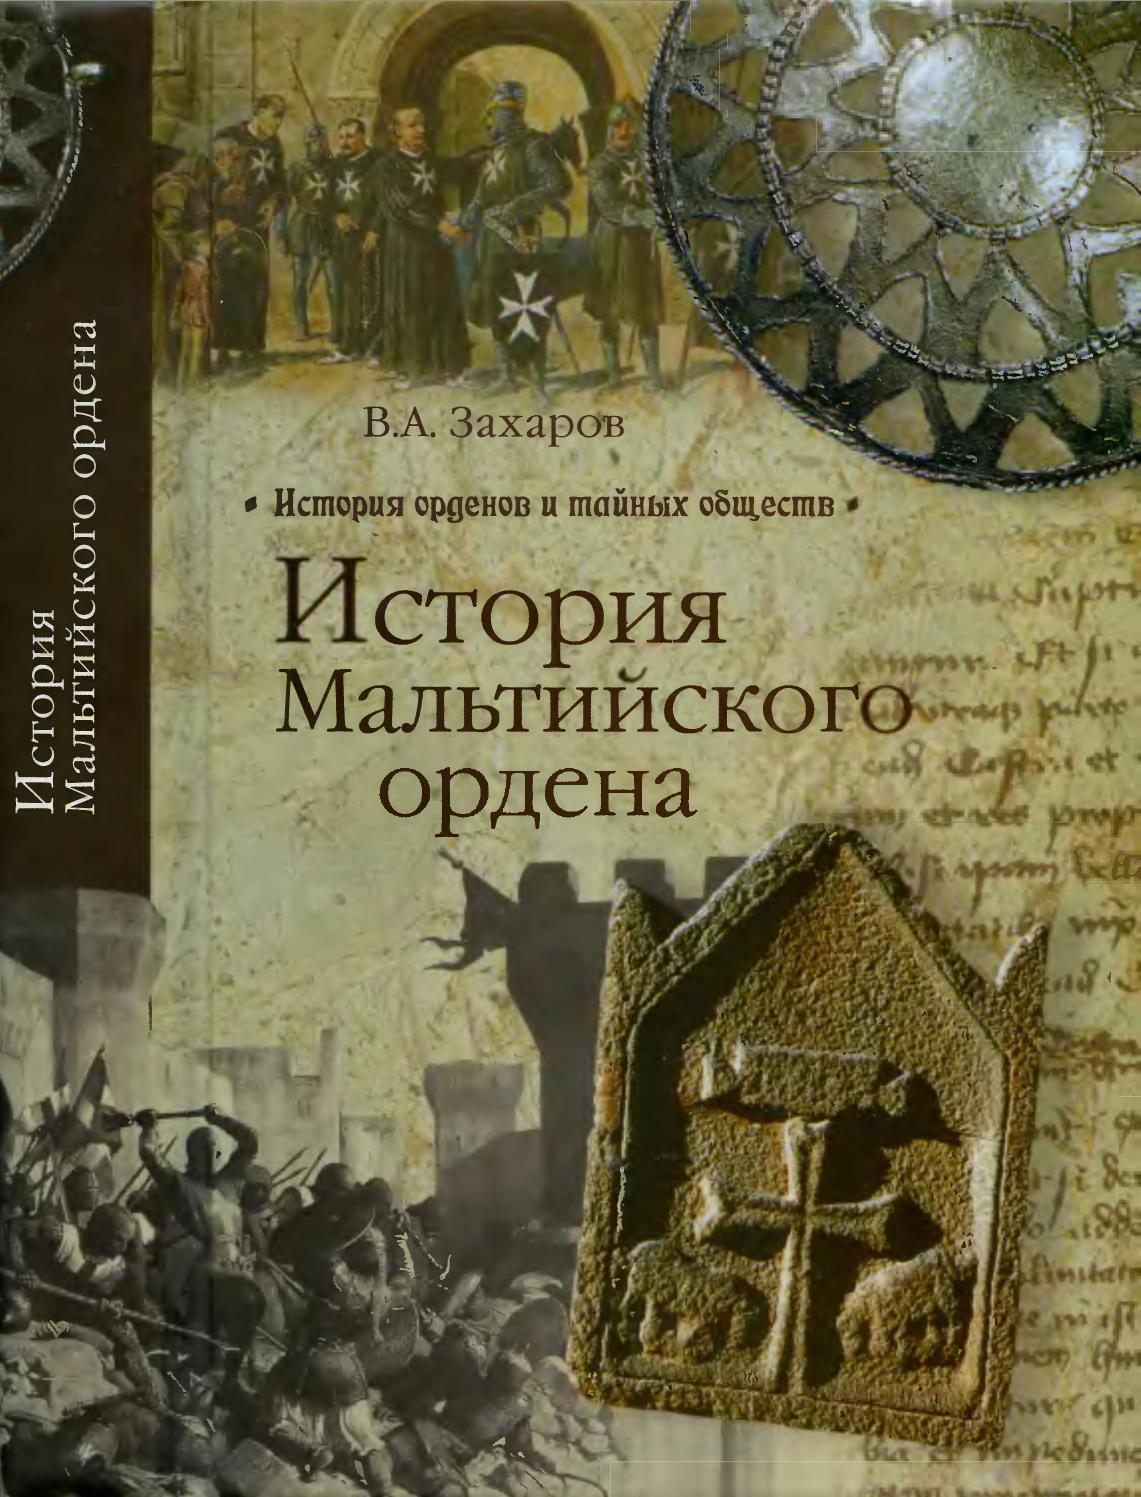 История Мальтийского ордена, 2012,  В.А. Захаров, В.Н. Чибисов